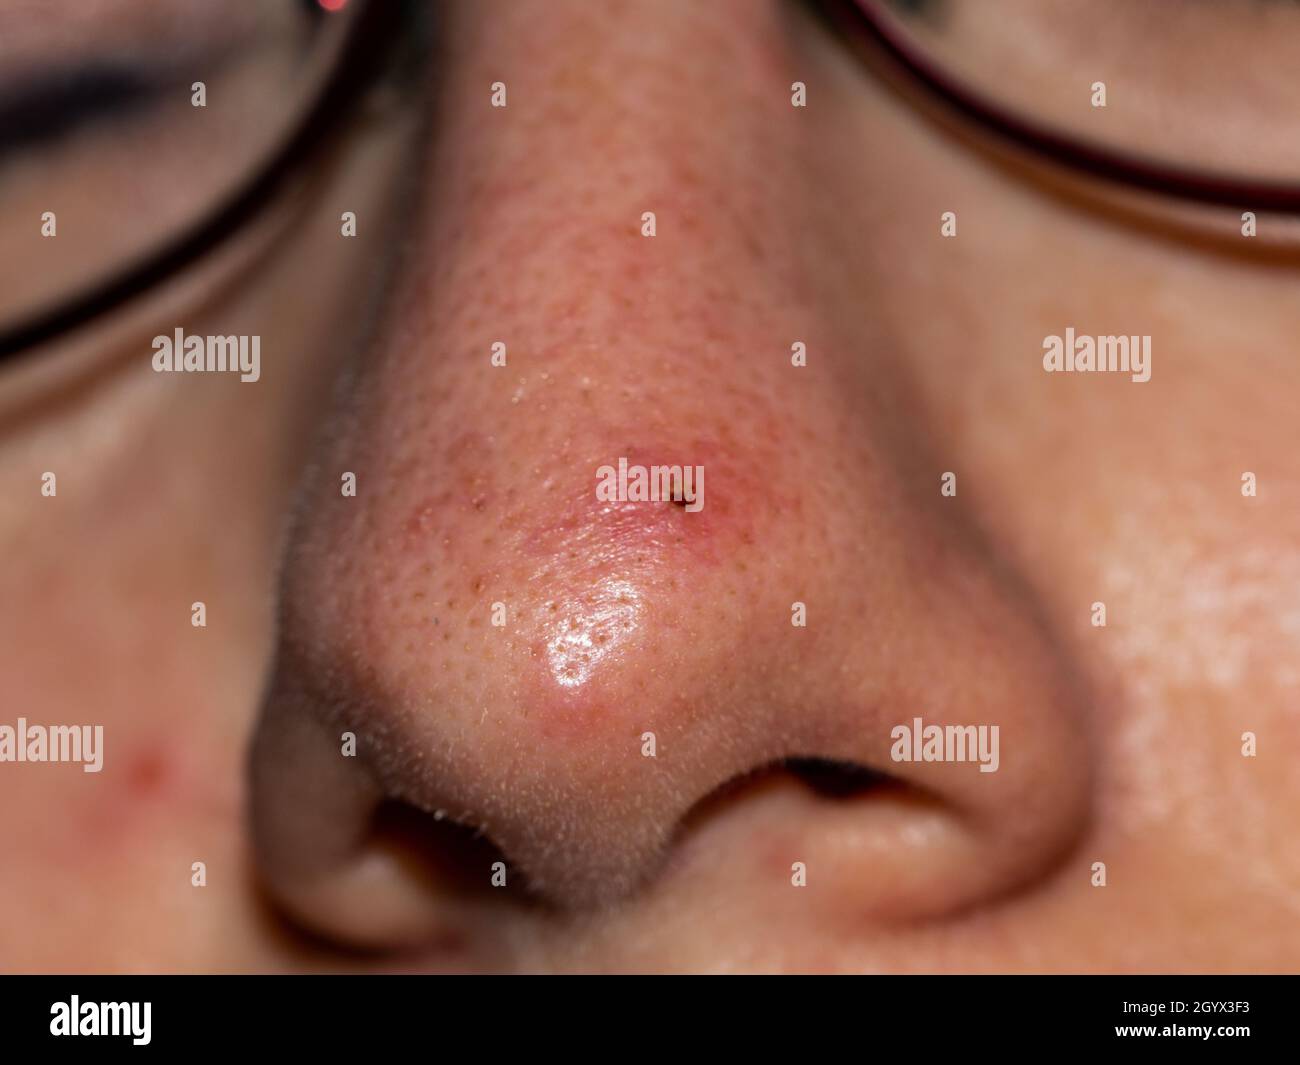 Detalle de un pequeño pustule inflamado en la piel de una persona caucásica Foto de stock